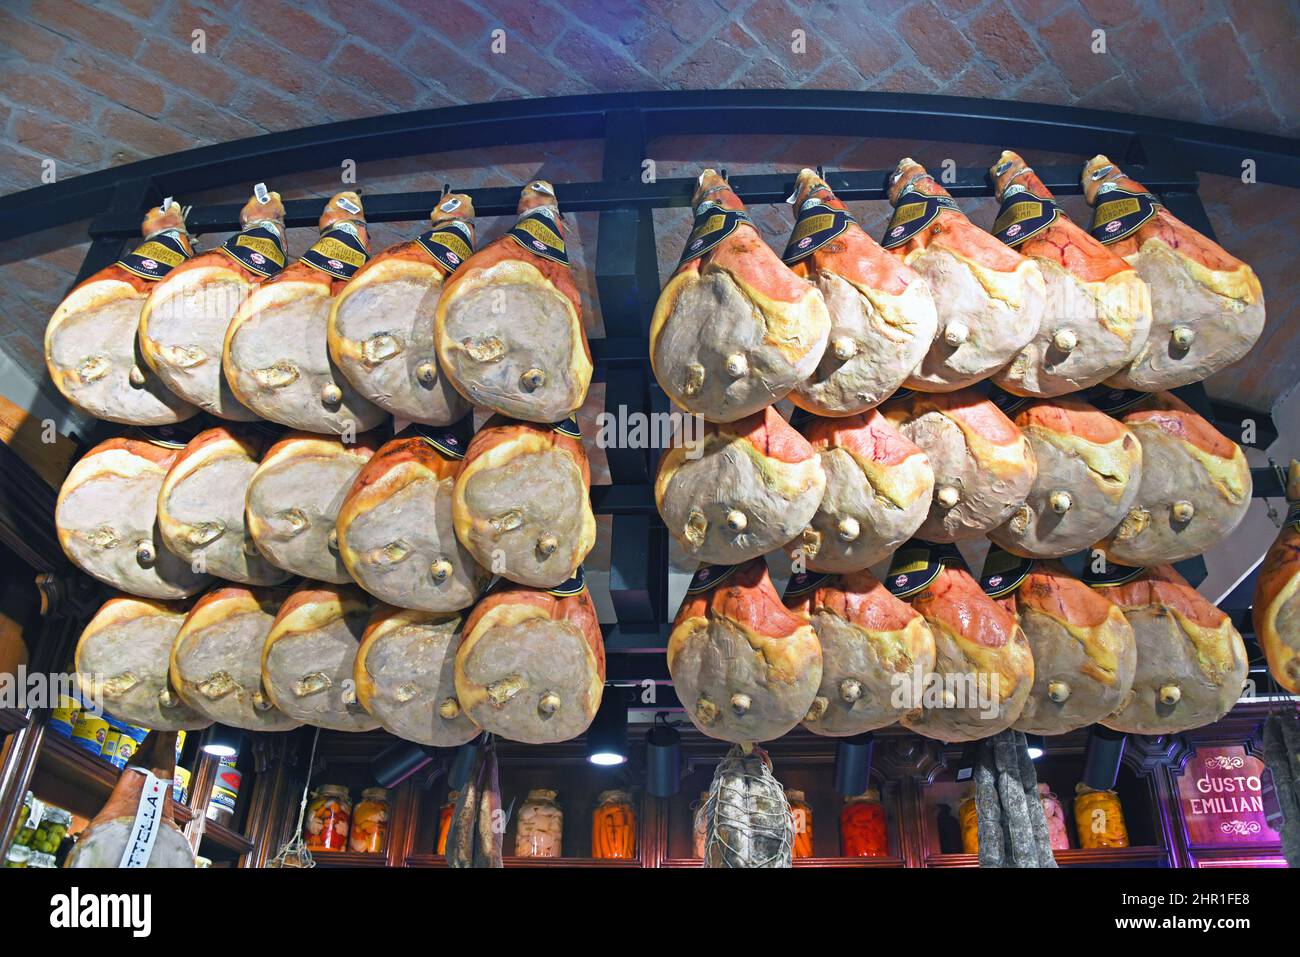 Famosos jamones locales en venta, Italia, Parma Foto de stock